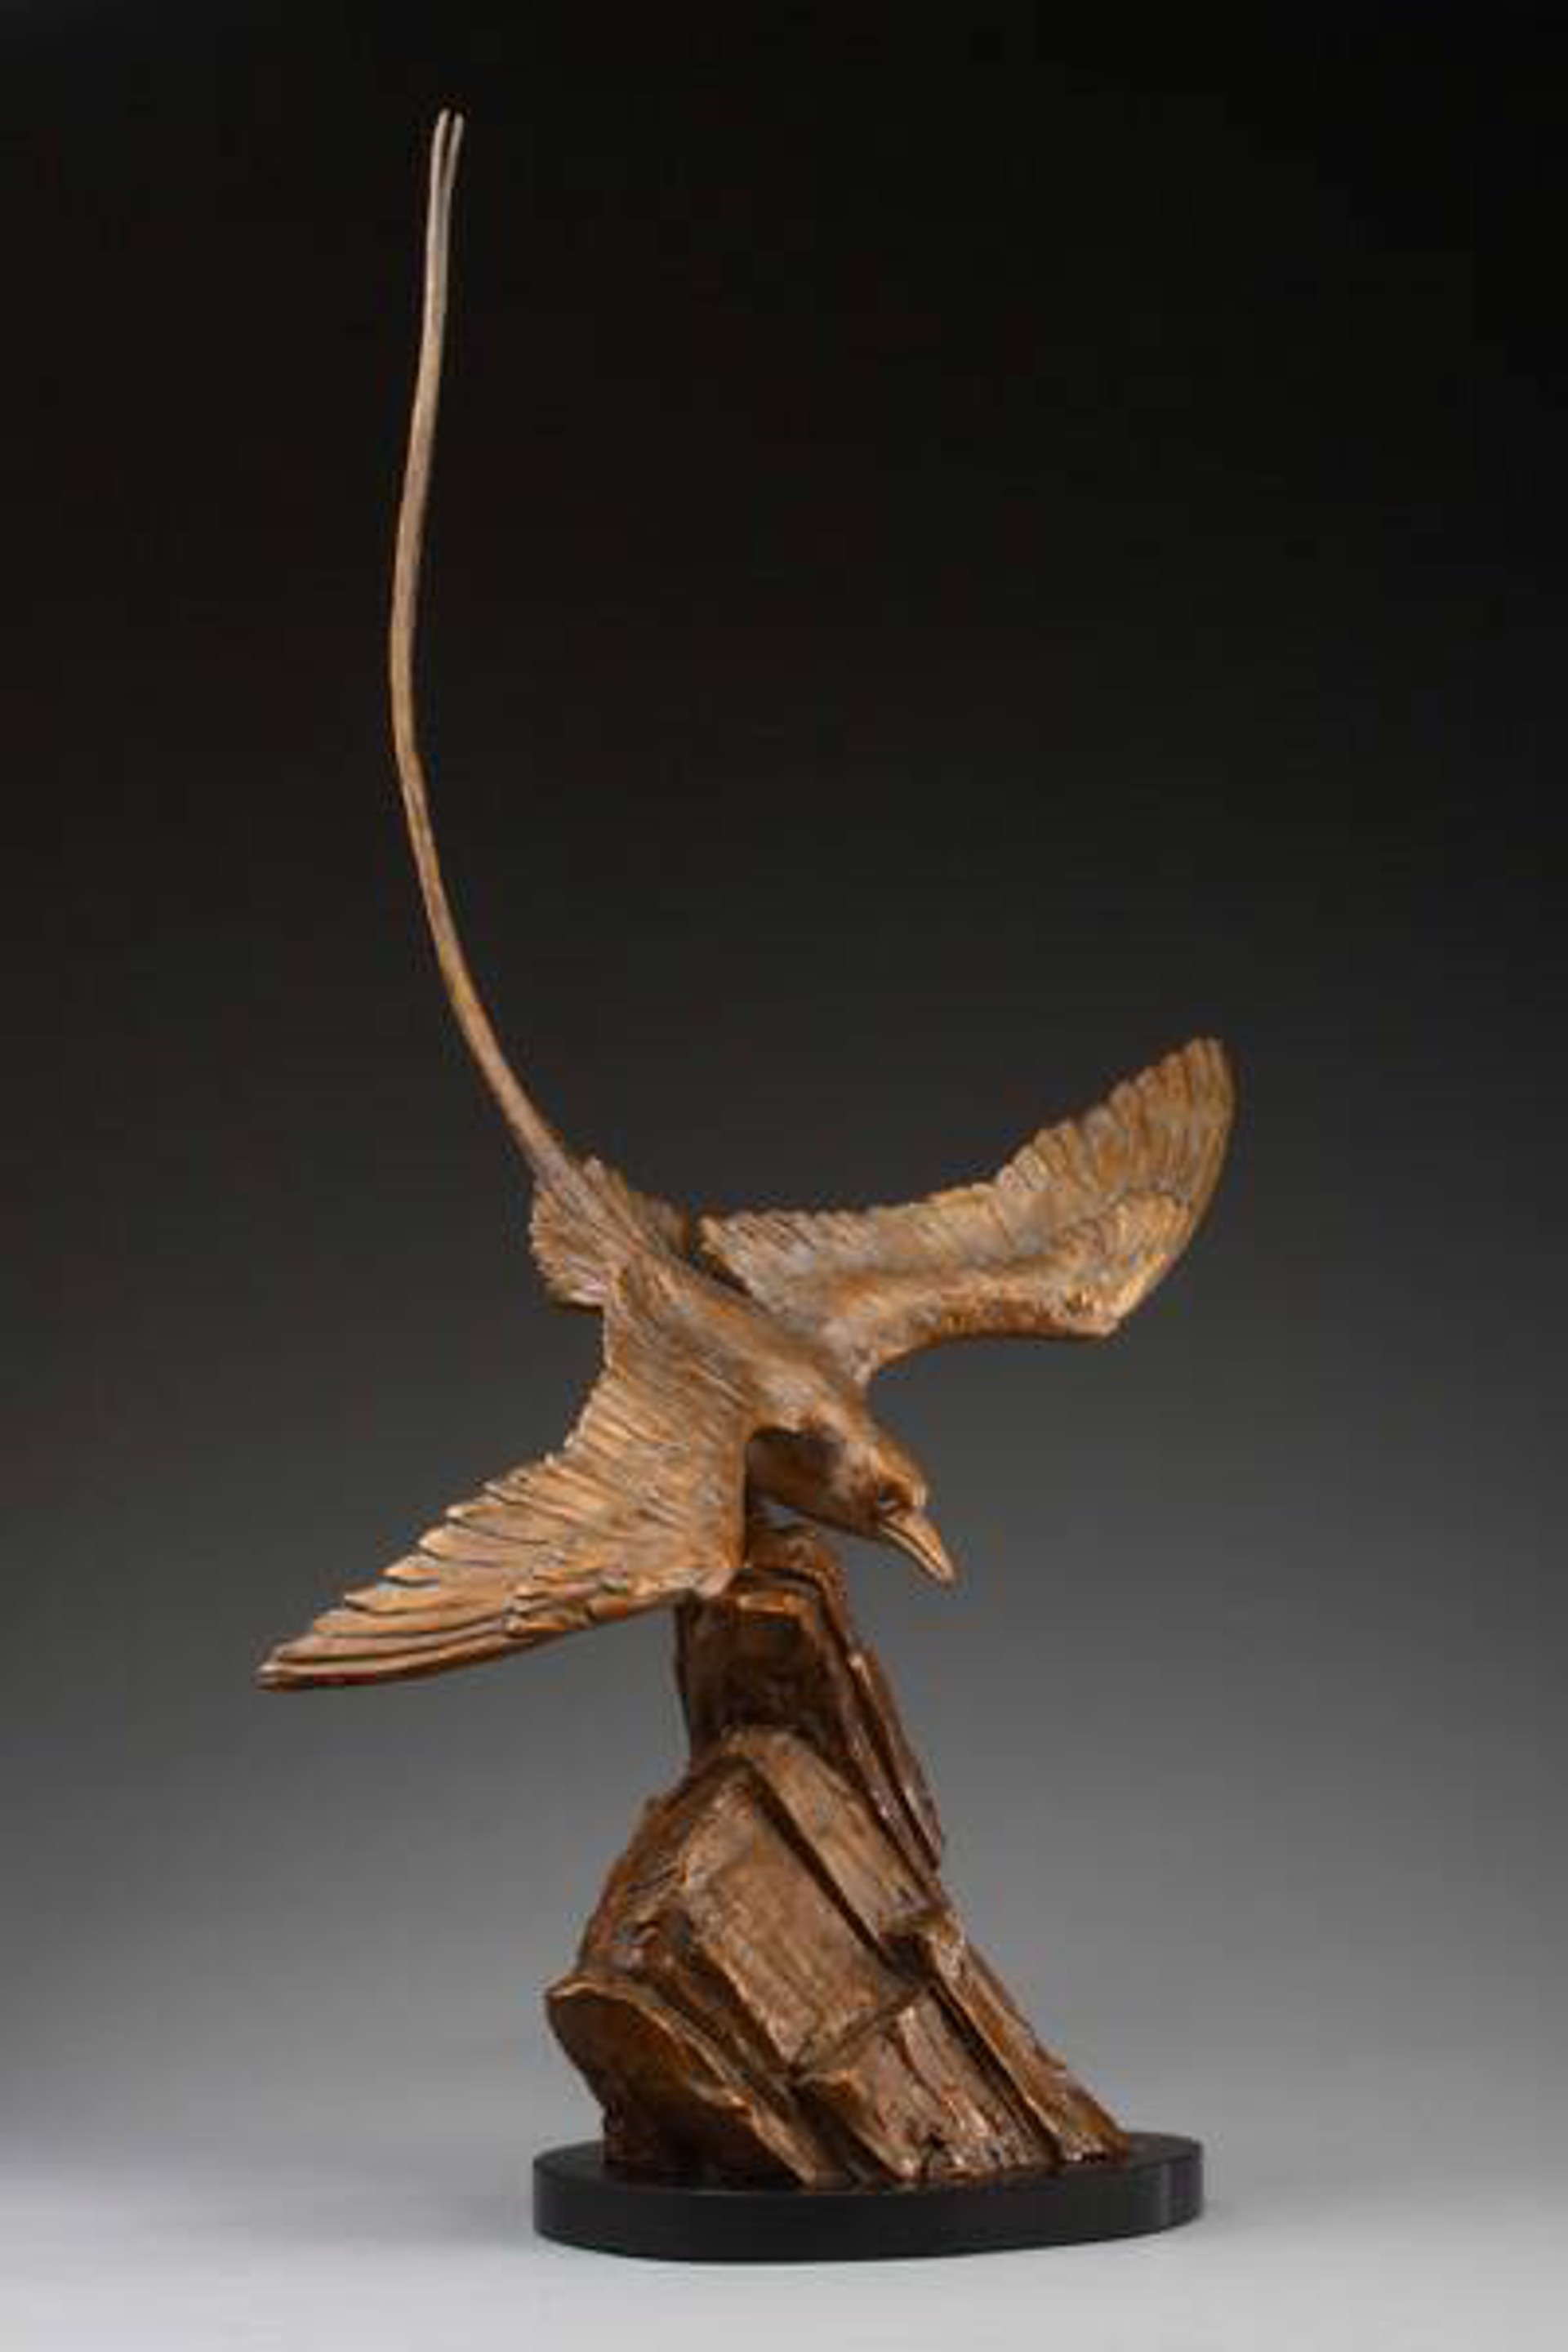 Tropic Bird by Daniel Glanz (sculptor)